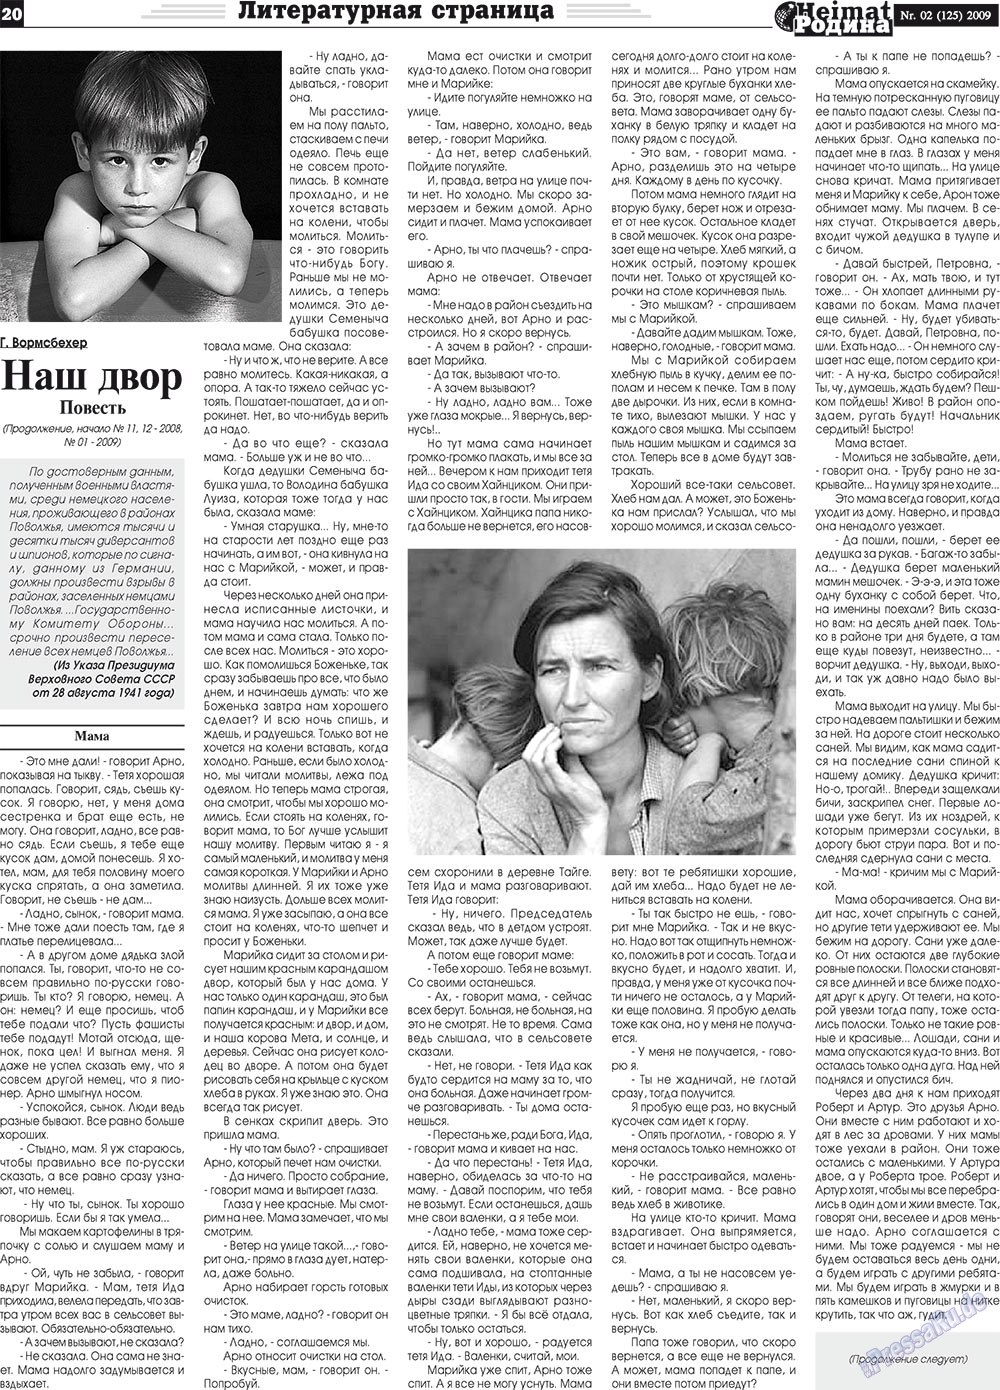 Heimat-Родина (газета). 2009 год, номер 2, стр. 20